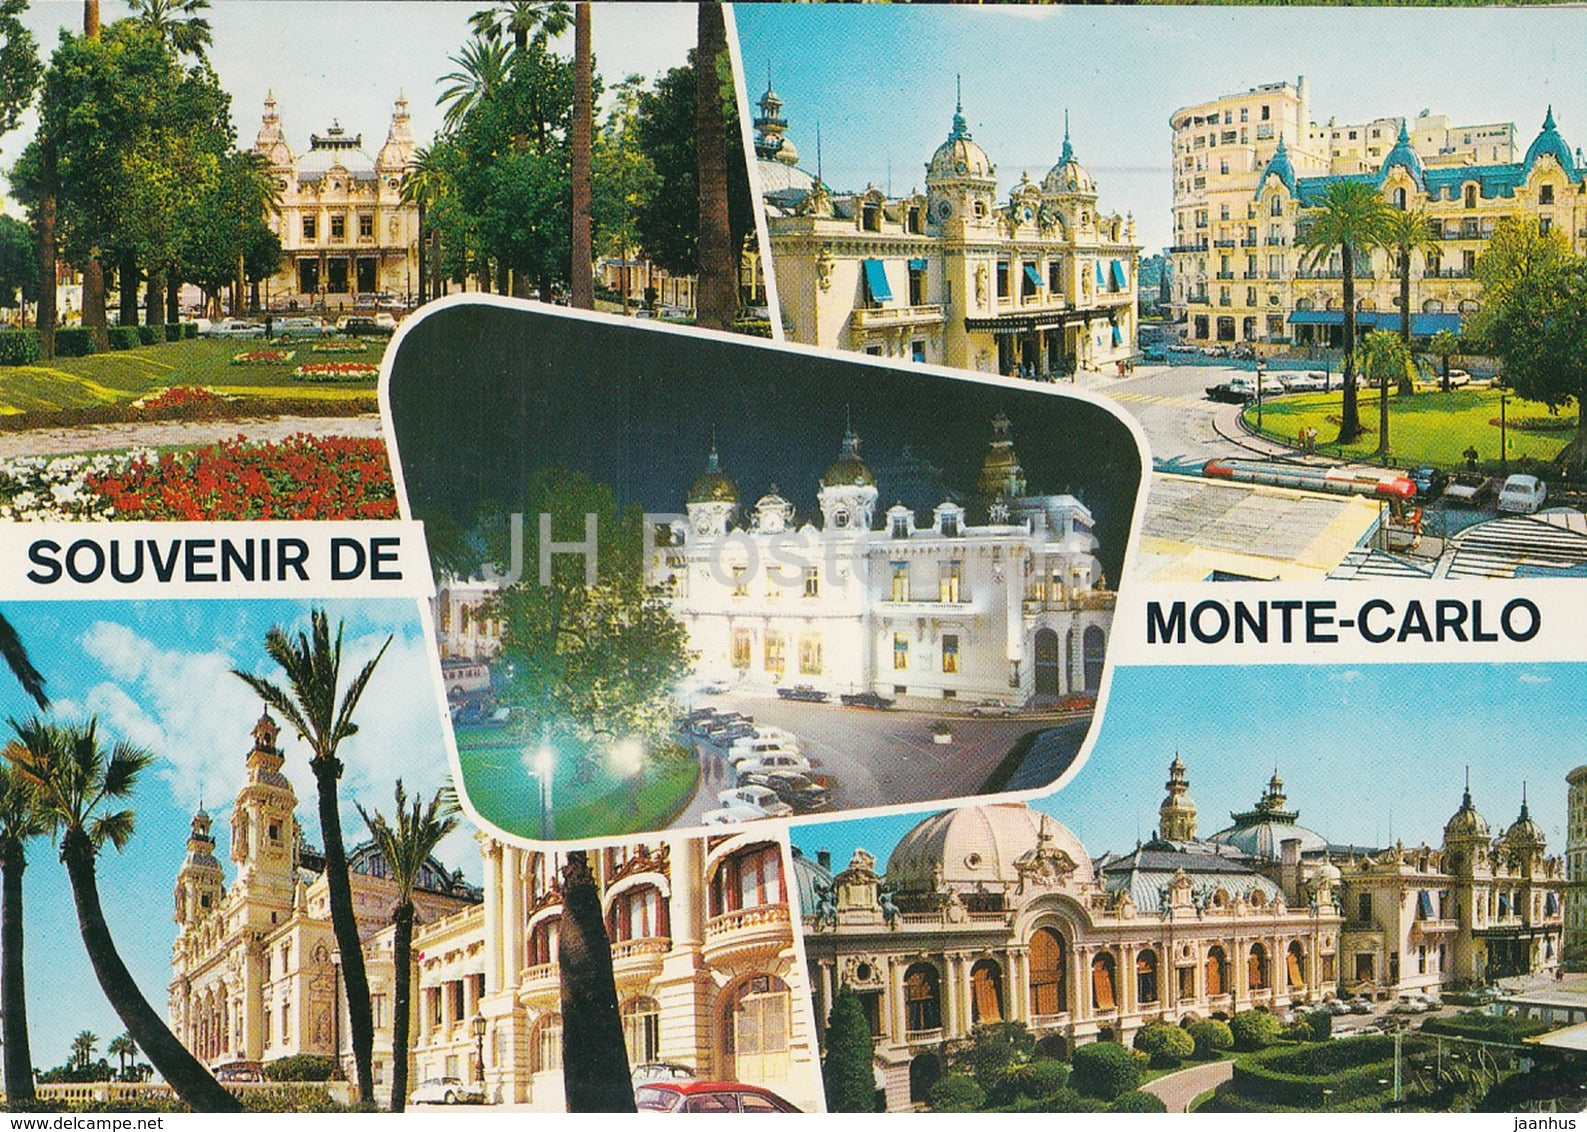 Souvenir de Monte-Carlo - Le Casino - Gardens - 58 - 1974 - Monaco - used - JH Postcards